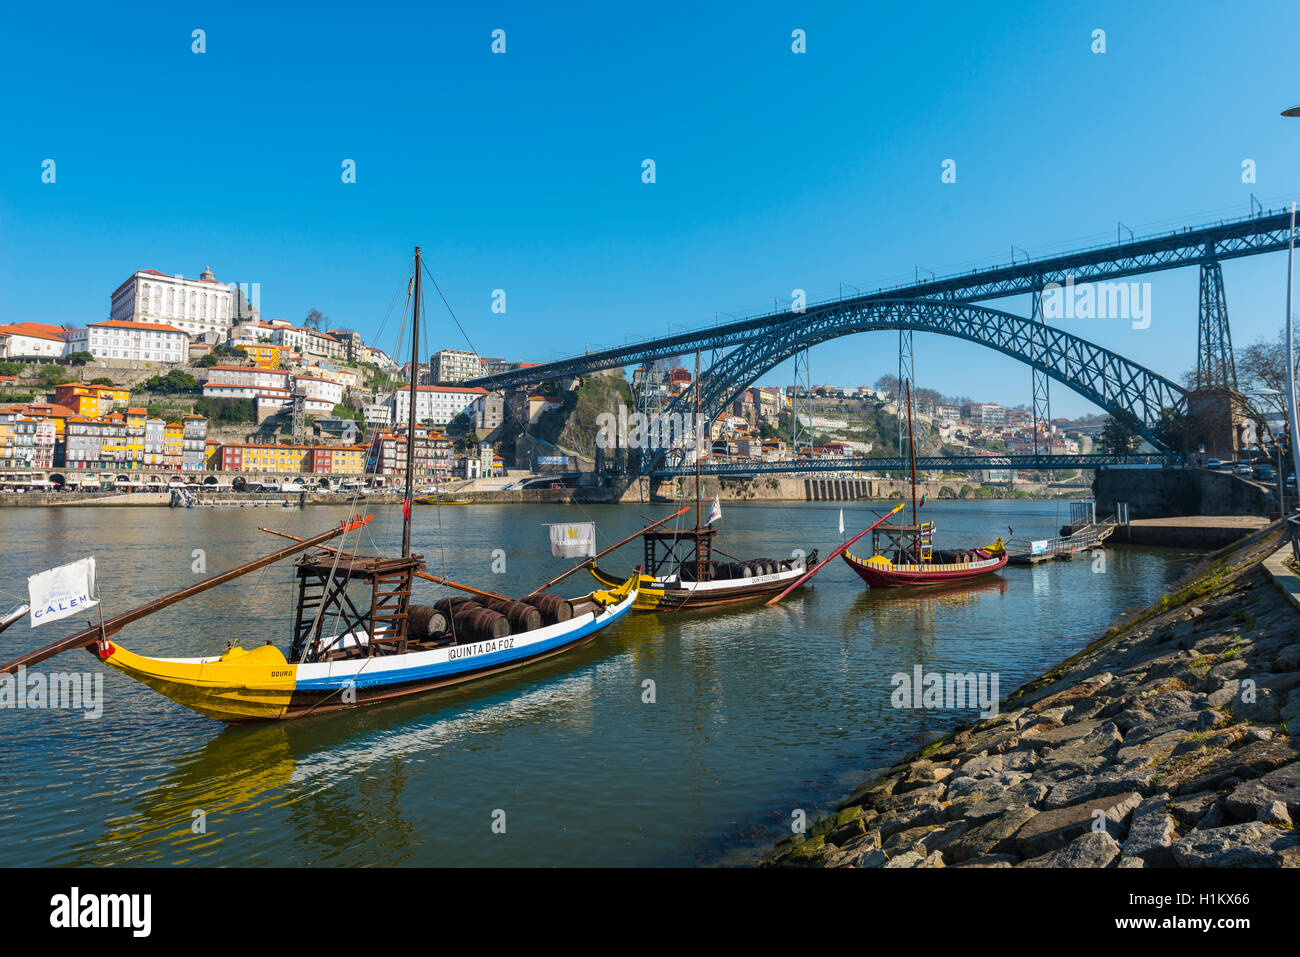 Rabelo boats, port wine boats on River Douro, Porto, Portugal Stock Photo